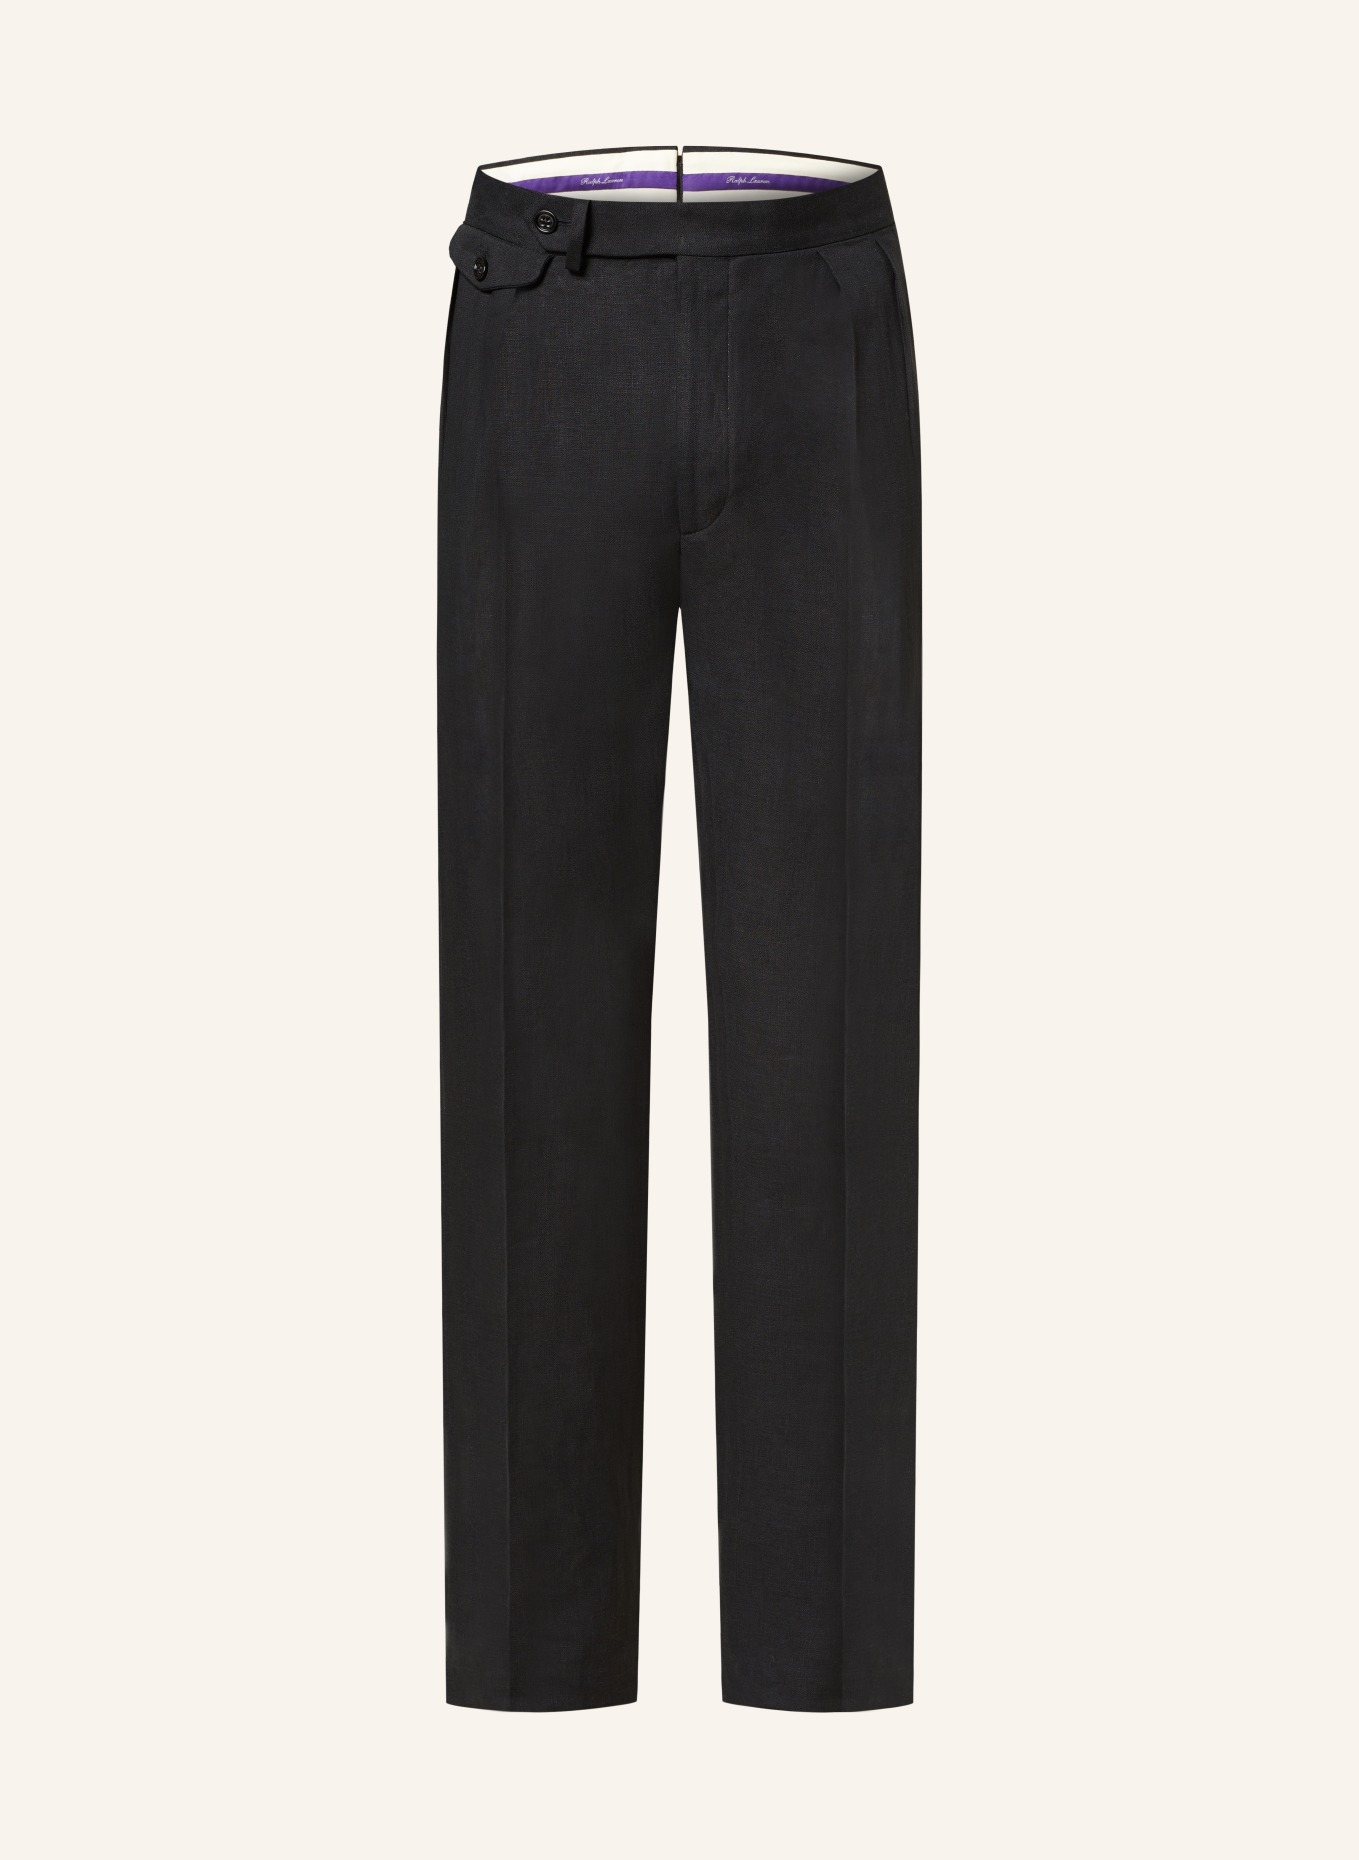 RALPH LAUREN PURPLE LABEL Linen trousers, Color: BLACK (Image 1)